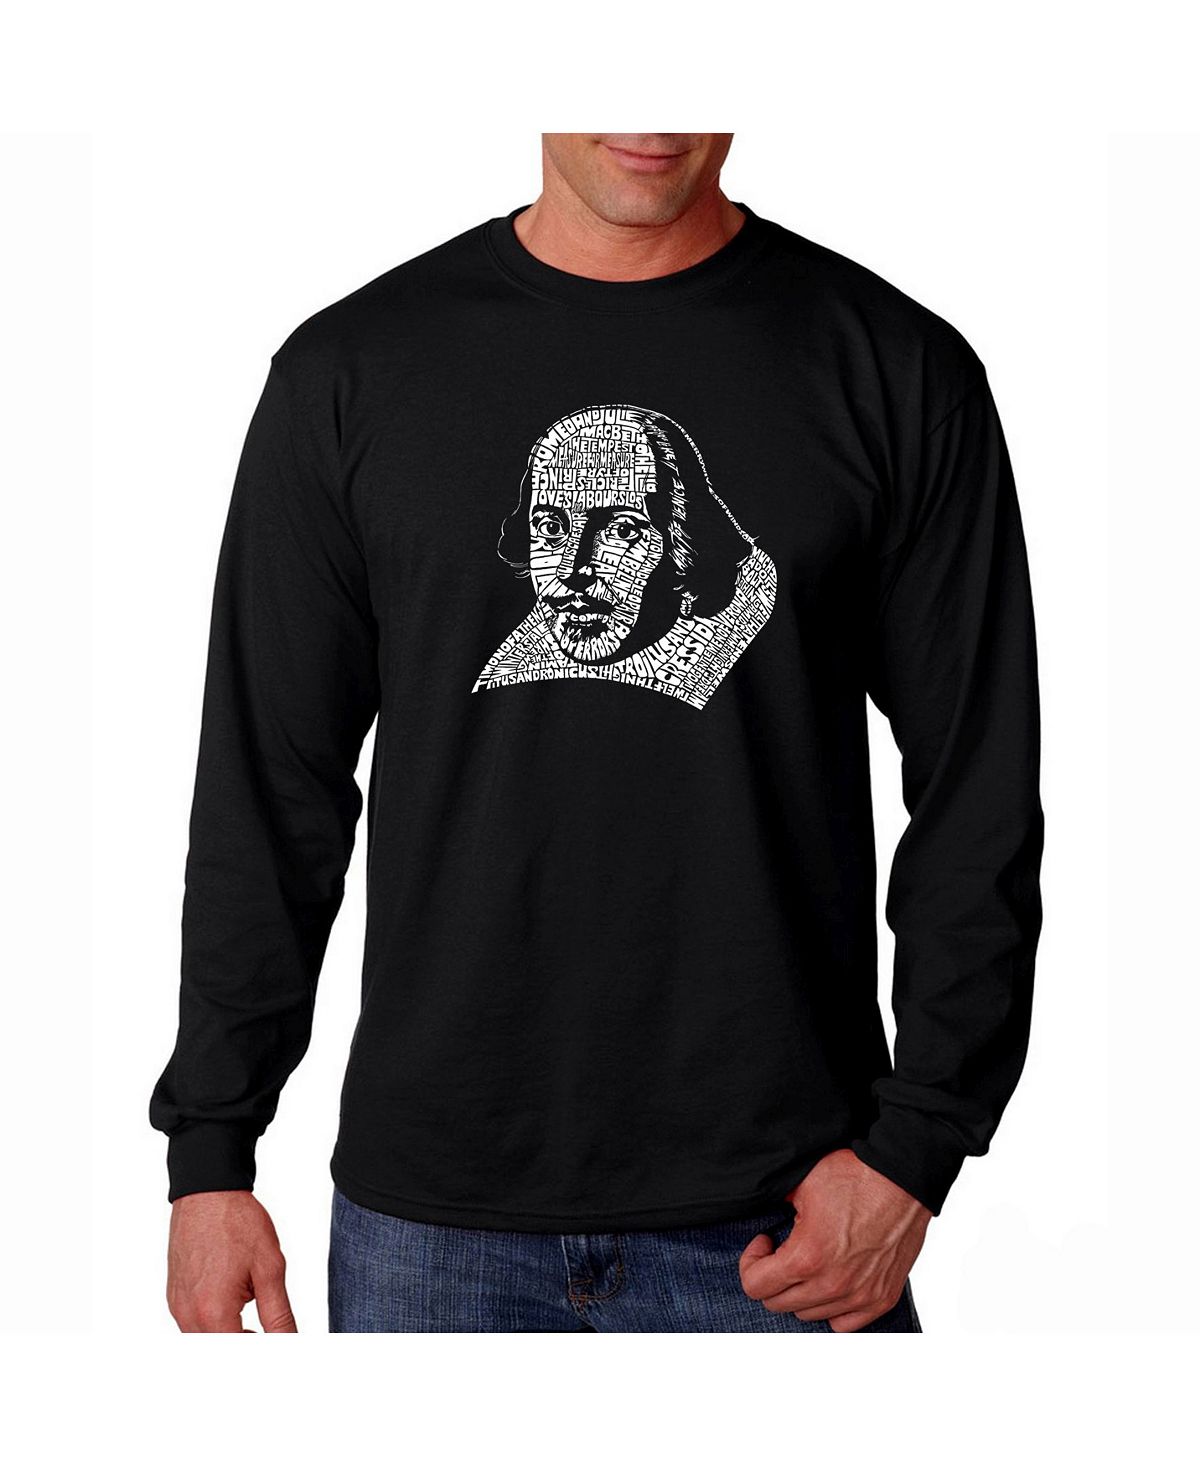 Мужская футболка с длинным рукавом word art - шекспир LA Pop Art, черный